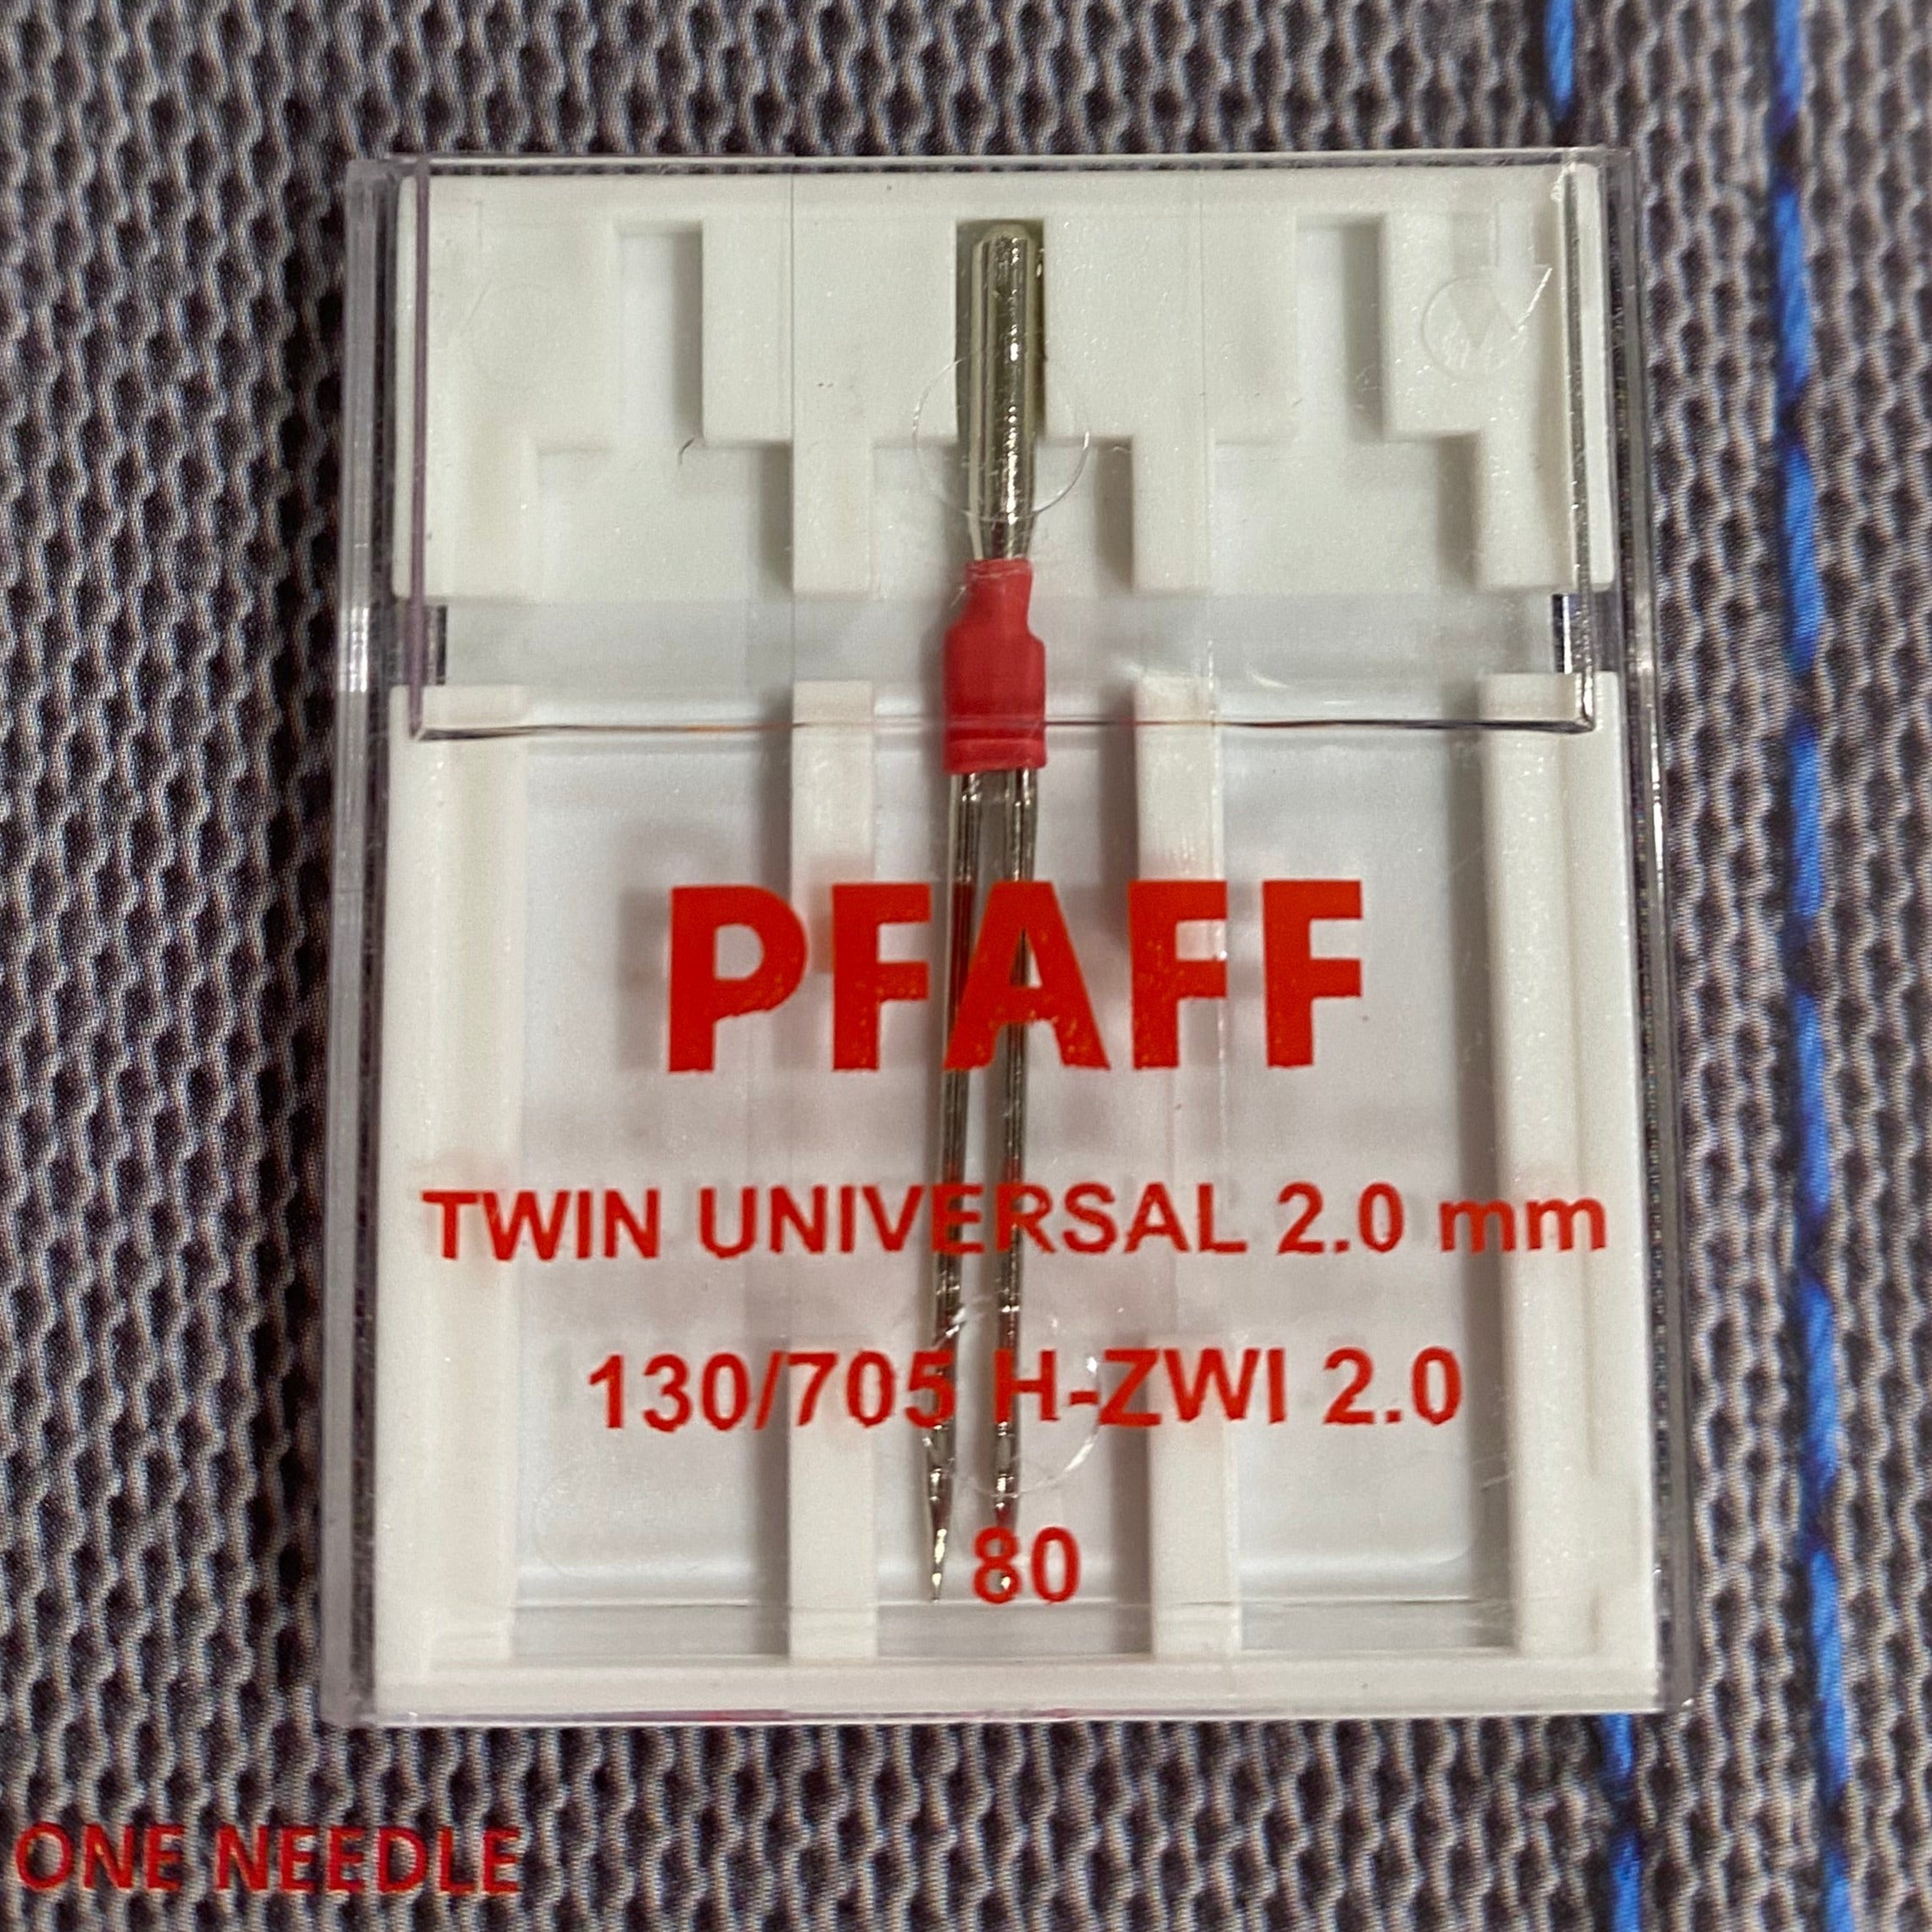 Twin Universal 2.5mm Needle Size 80/12